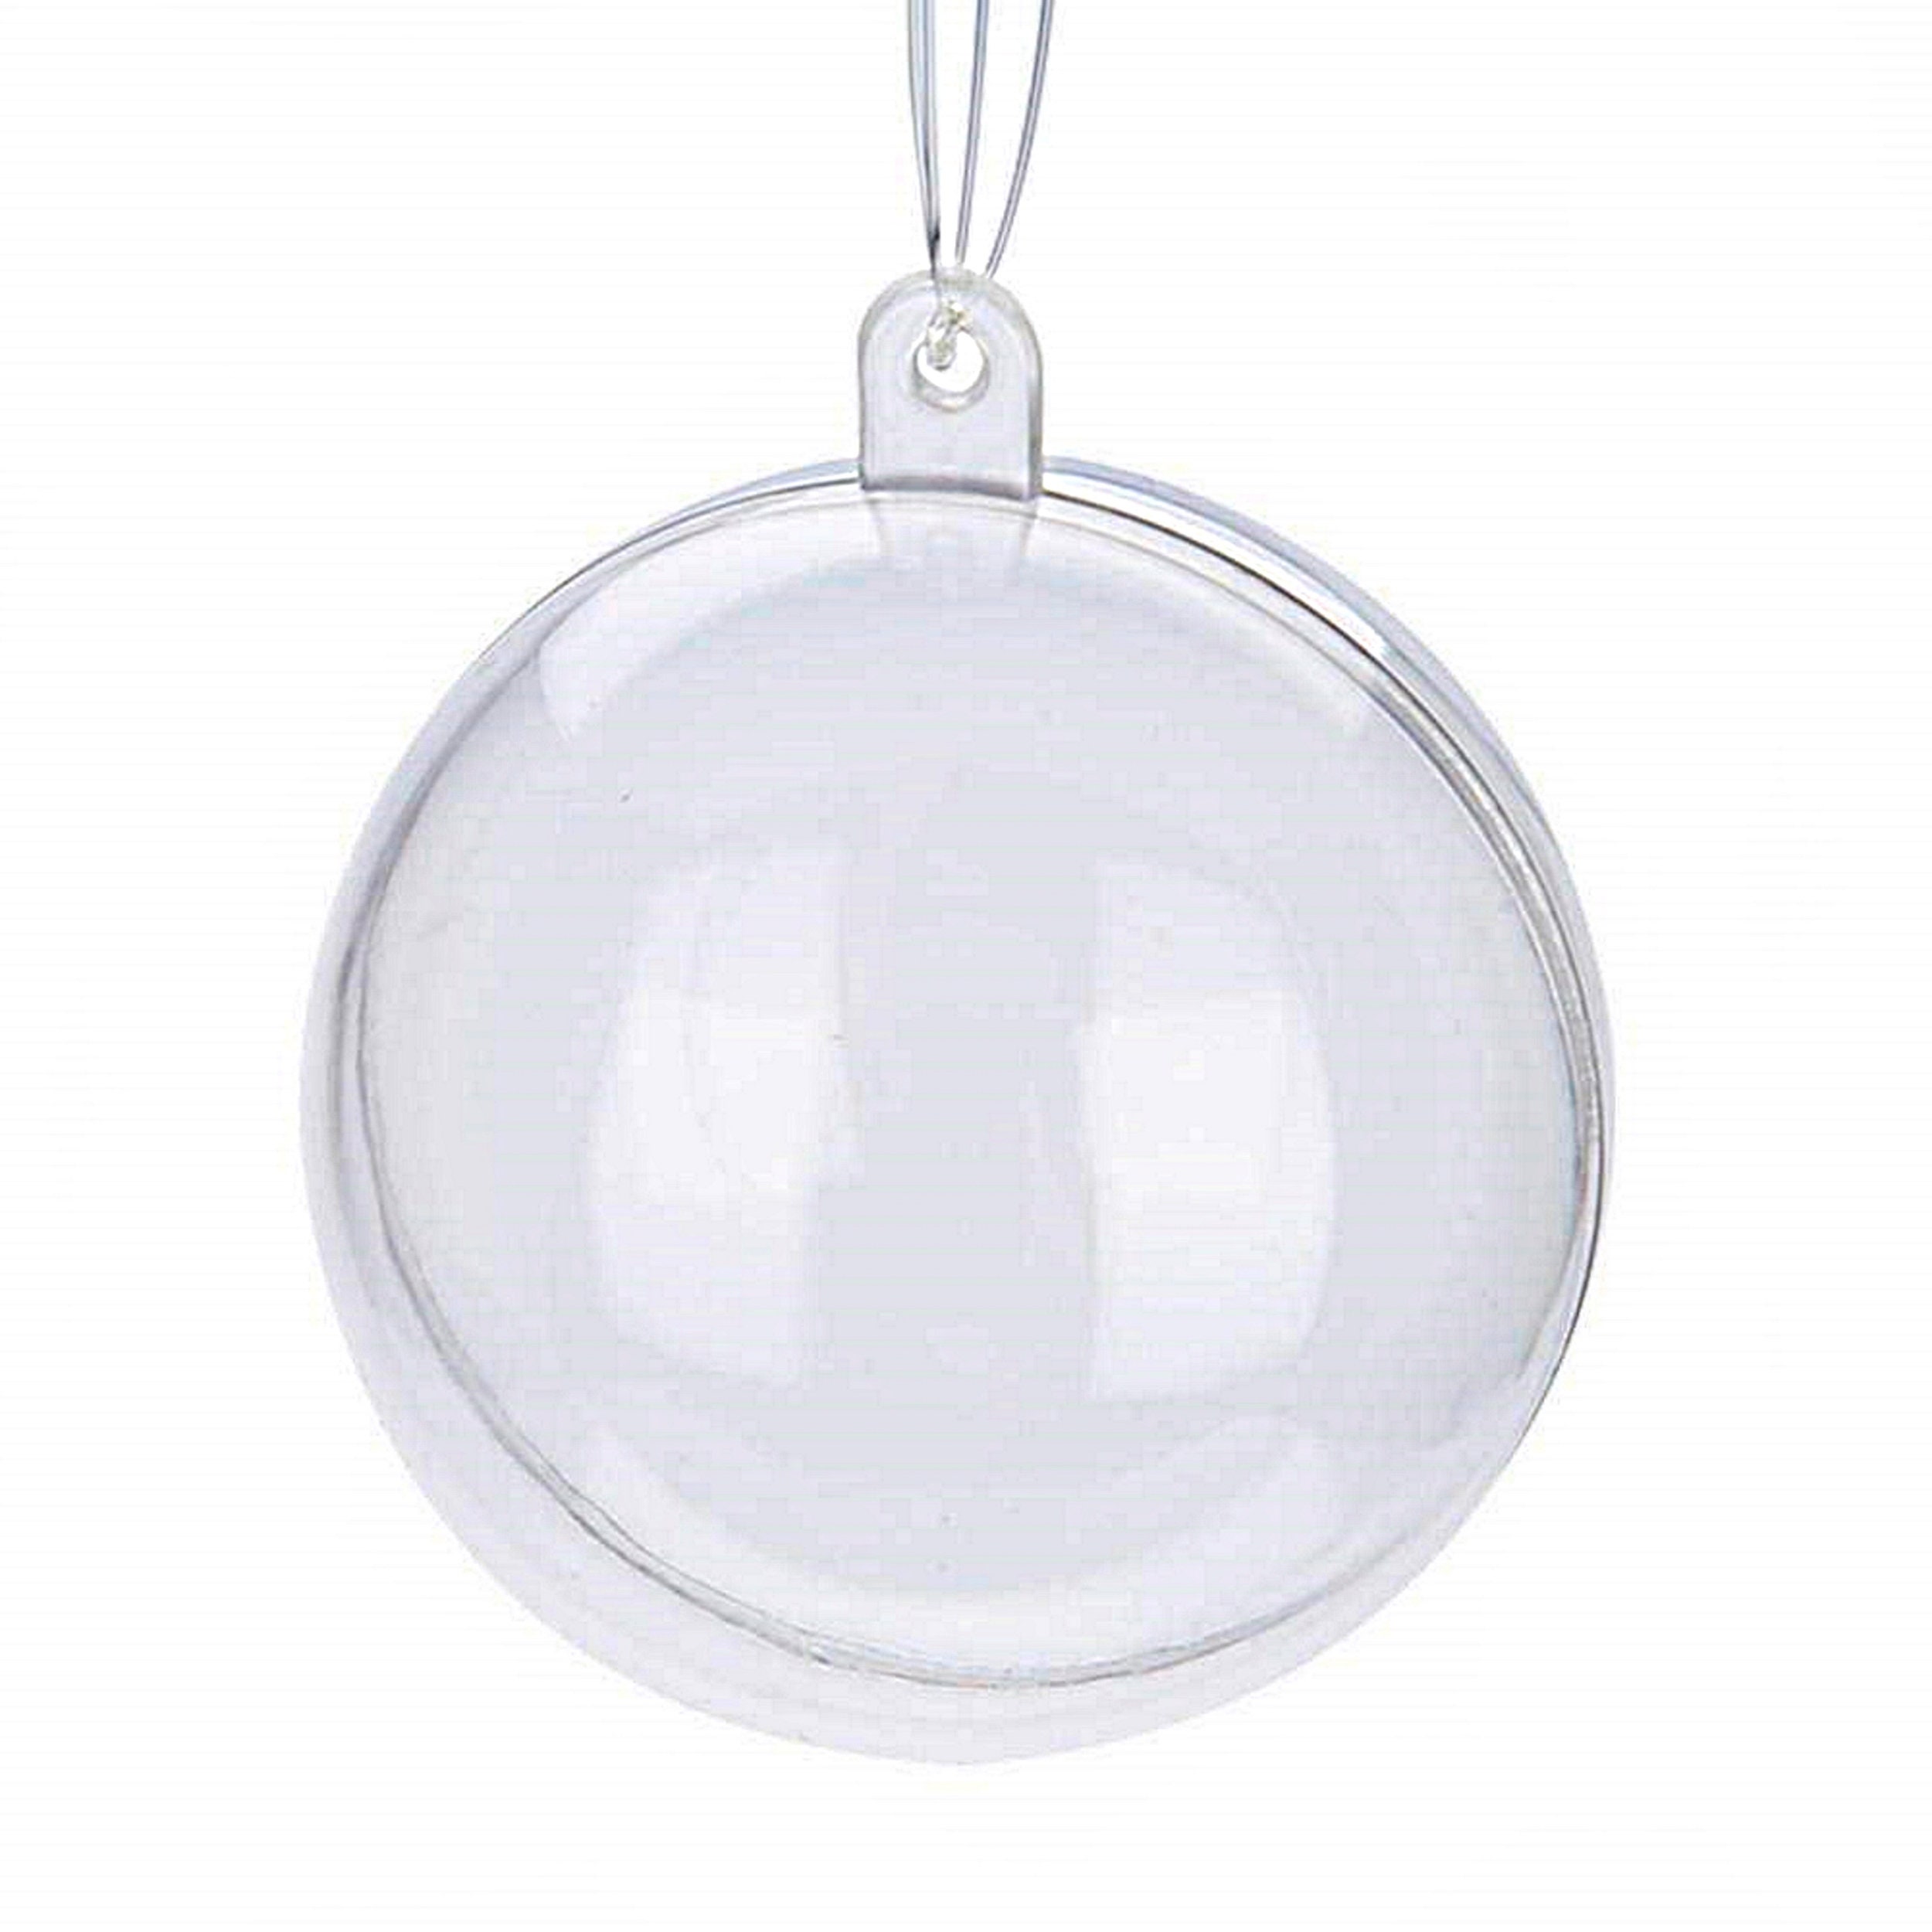 12 CLEAR PLASTIC Bell fillable Ornament favor 4 100mm $12.95 - PicClick